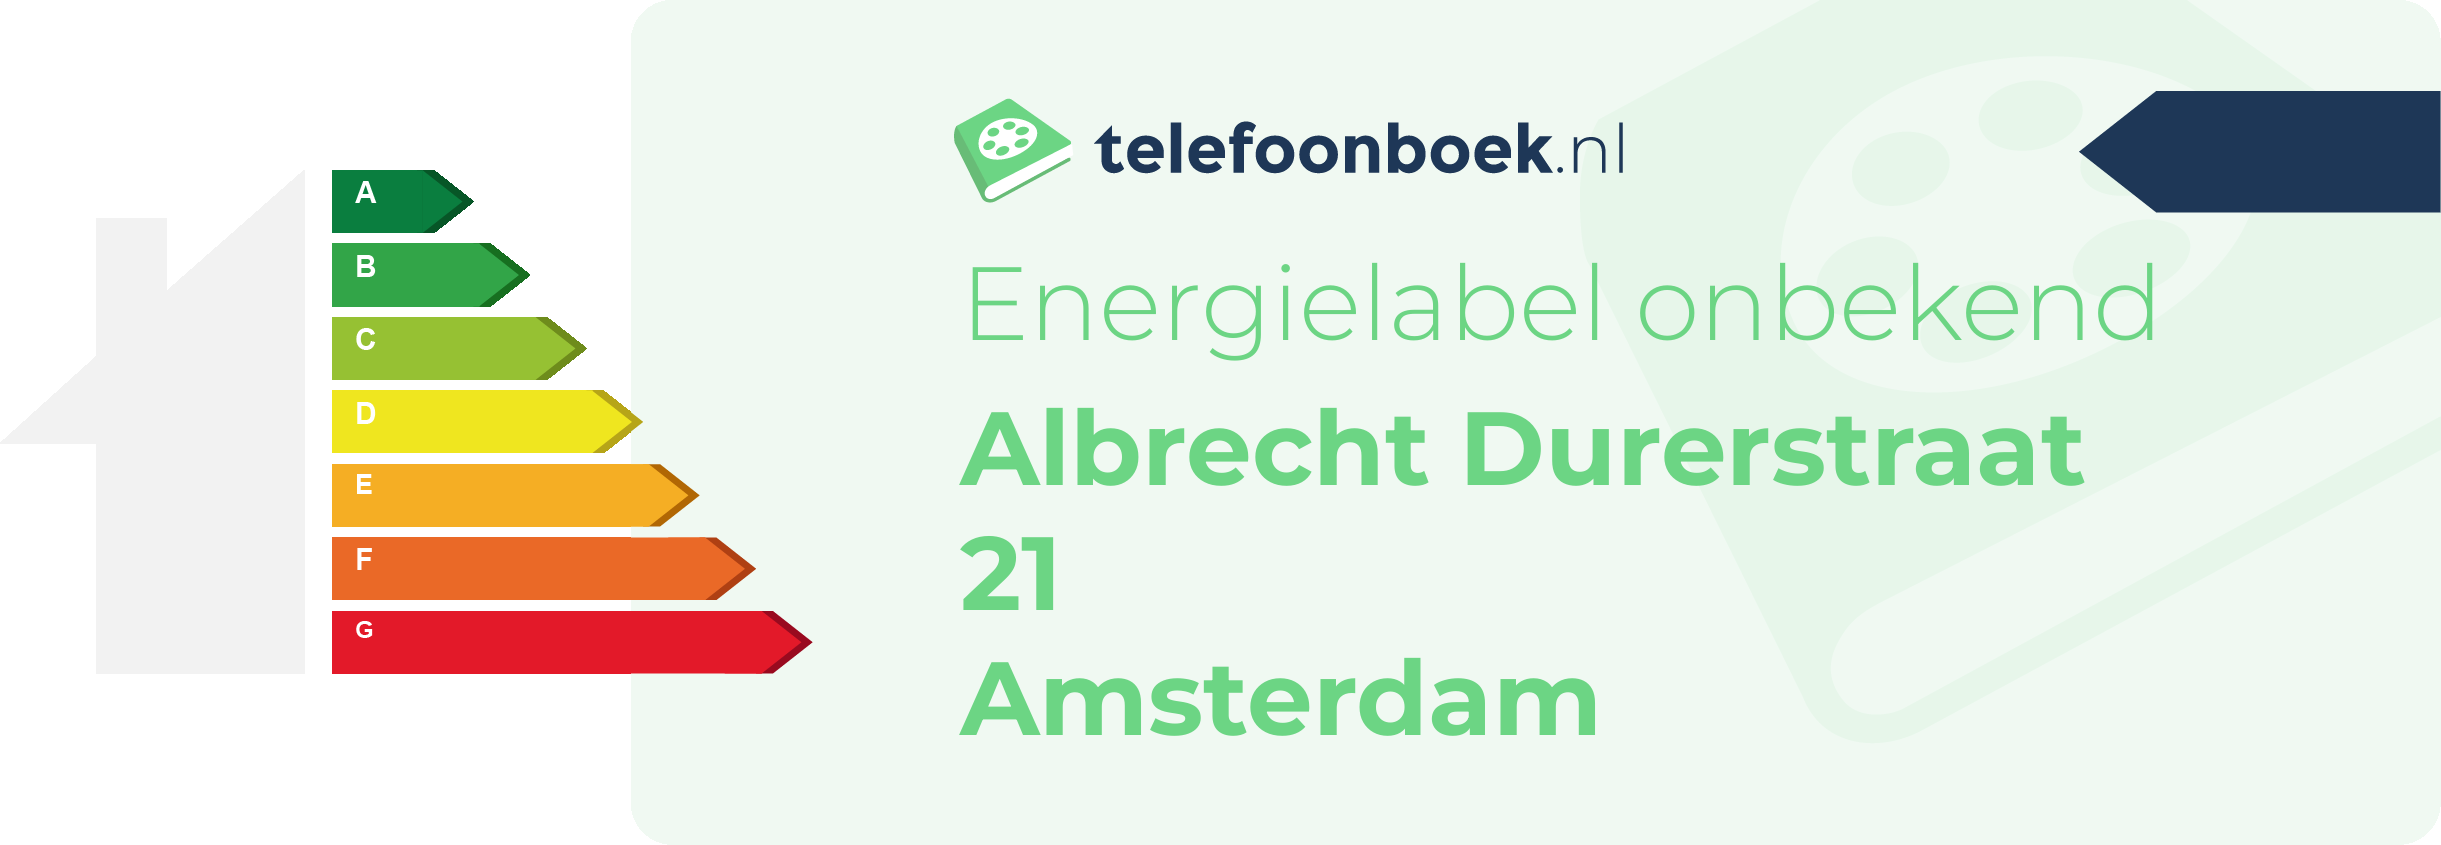 Energielabel Albrecht Durerstraat 21 Amsterdam